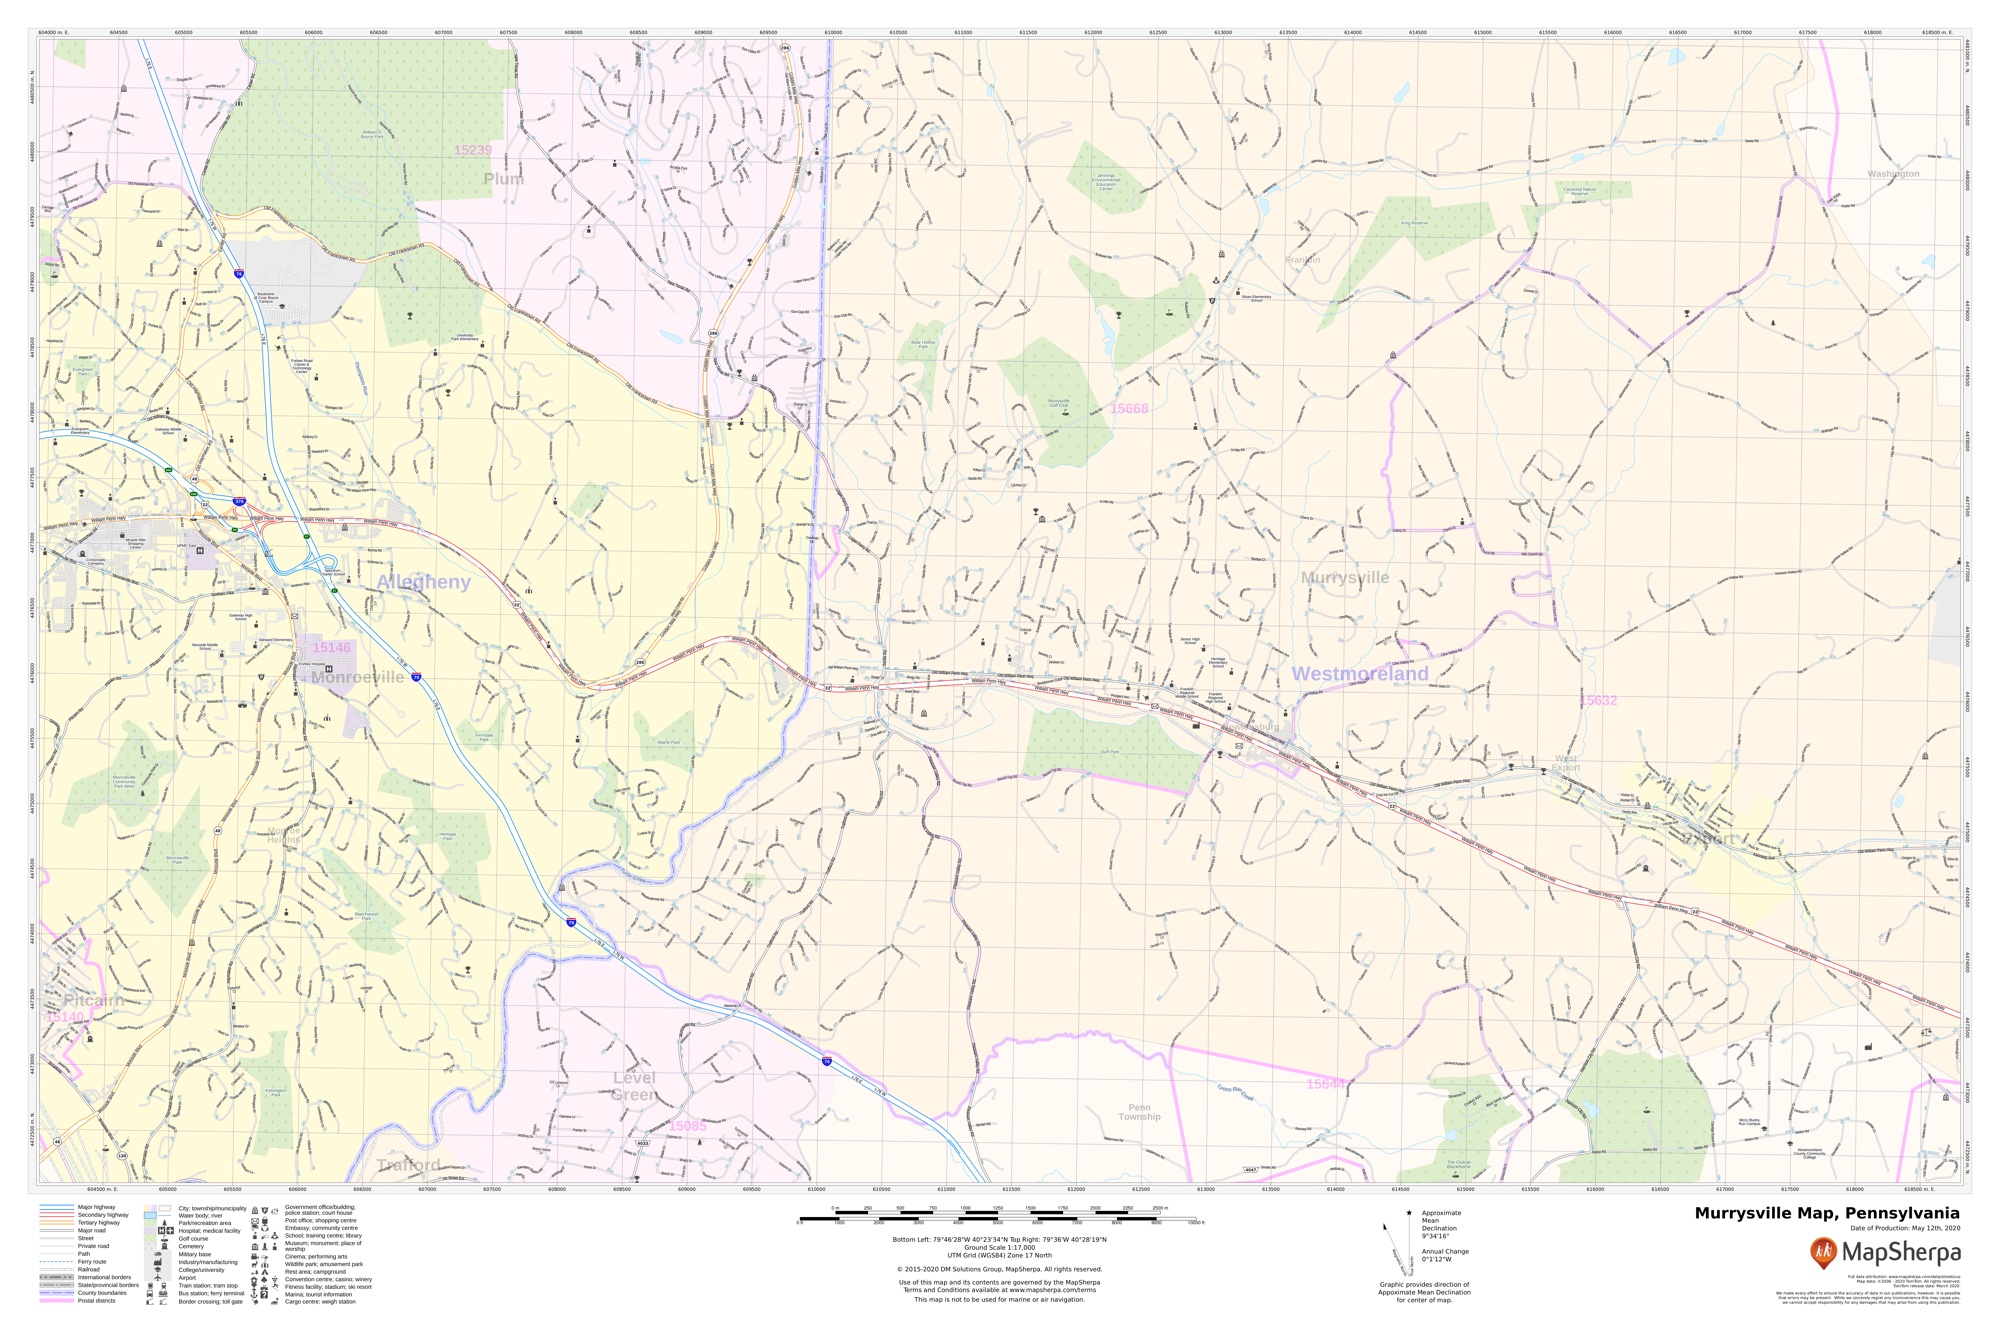 Murrysville Map, Pennsylvania